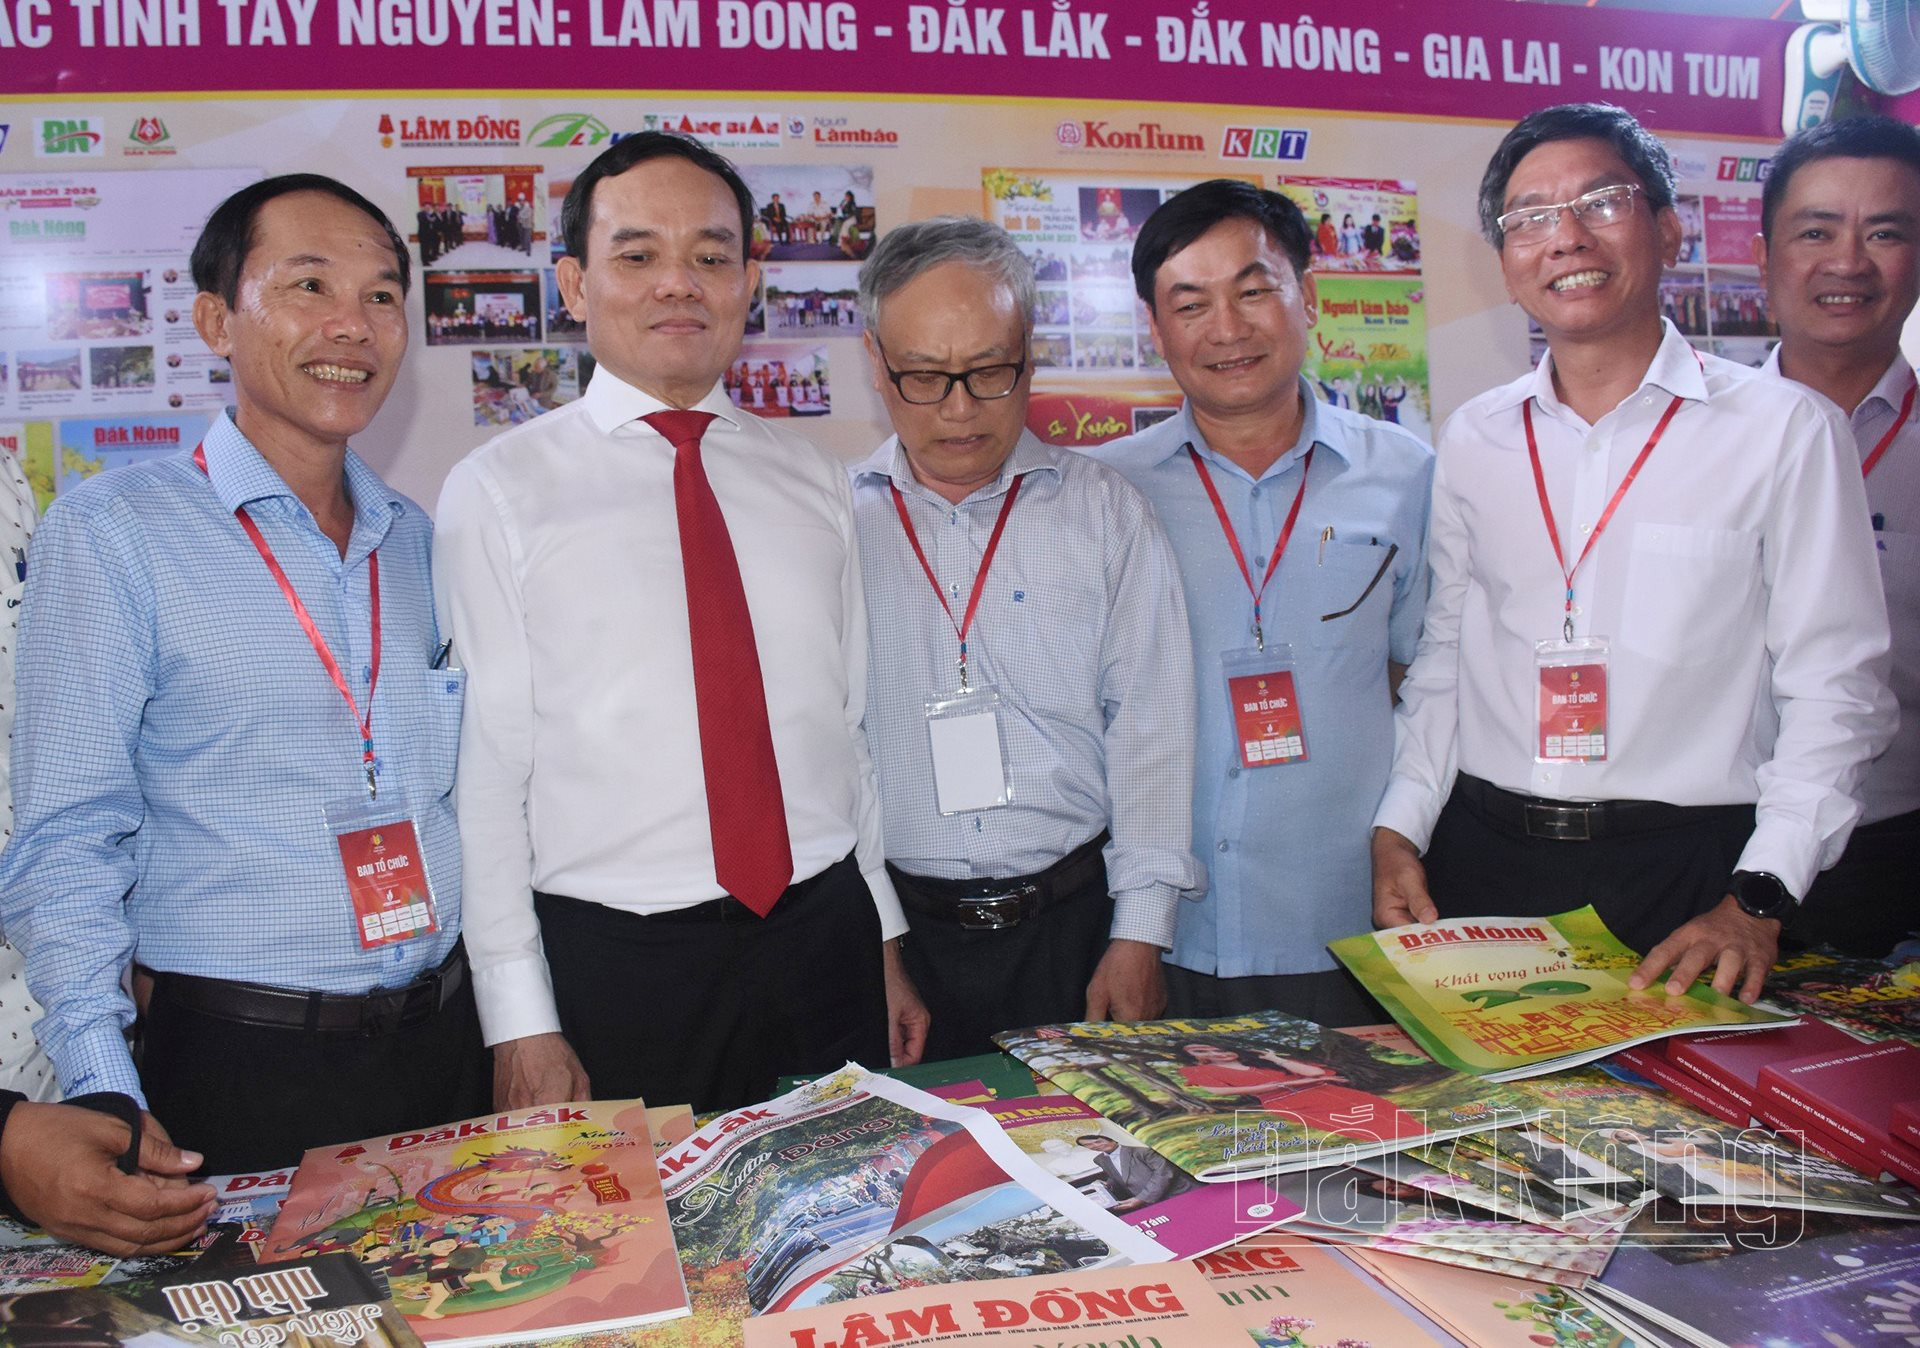 Phó Thủ tướng Chính phủ Trần Lưu Quang tham quan gian trưng bày các ấn phẩm báo chí đặc sắc, tiêu biểu của hội nhà báo các tỉnh Tây Nguyên.